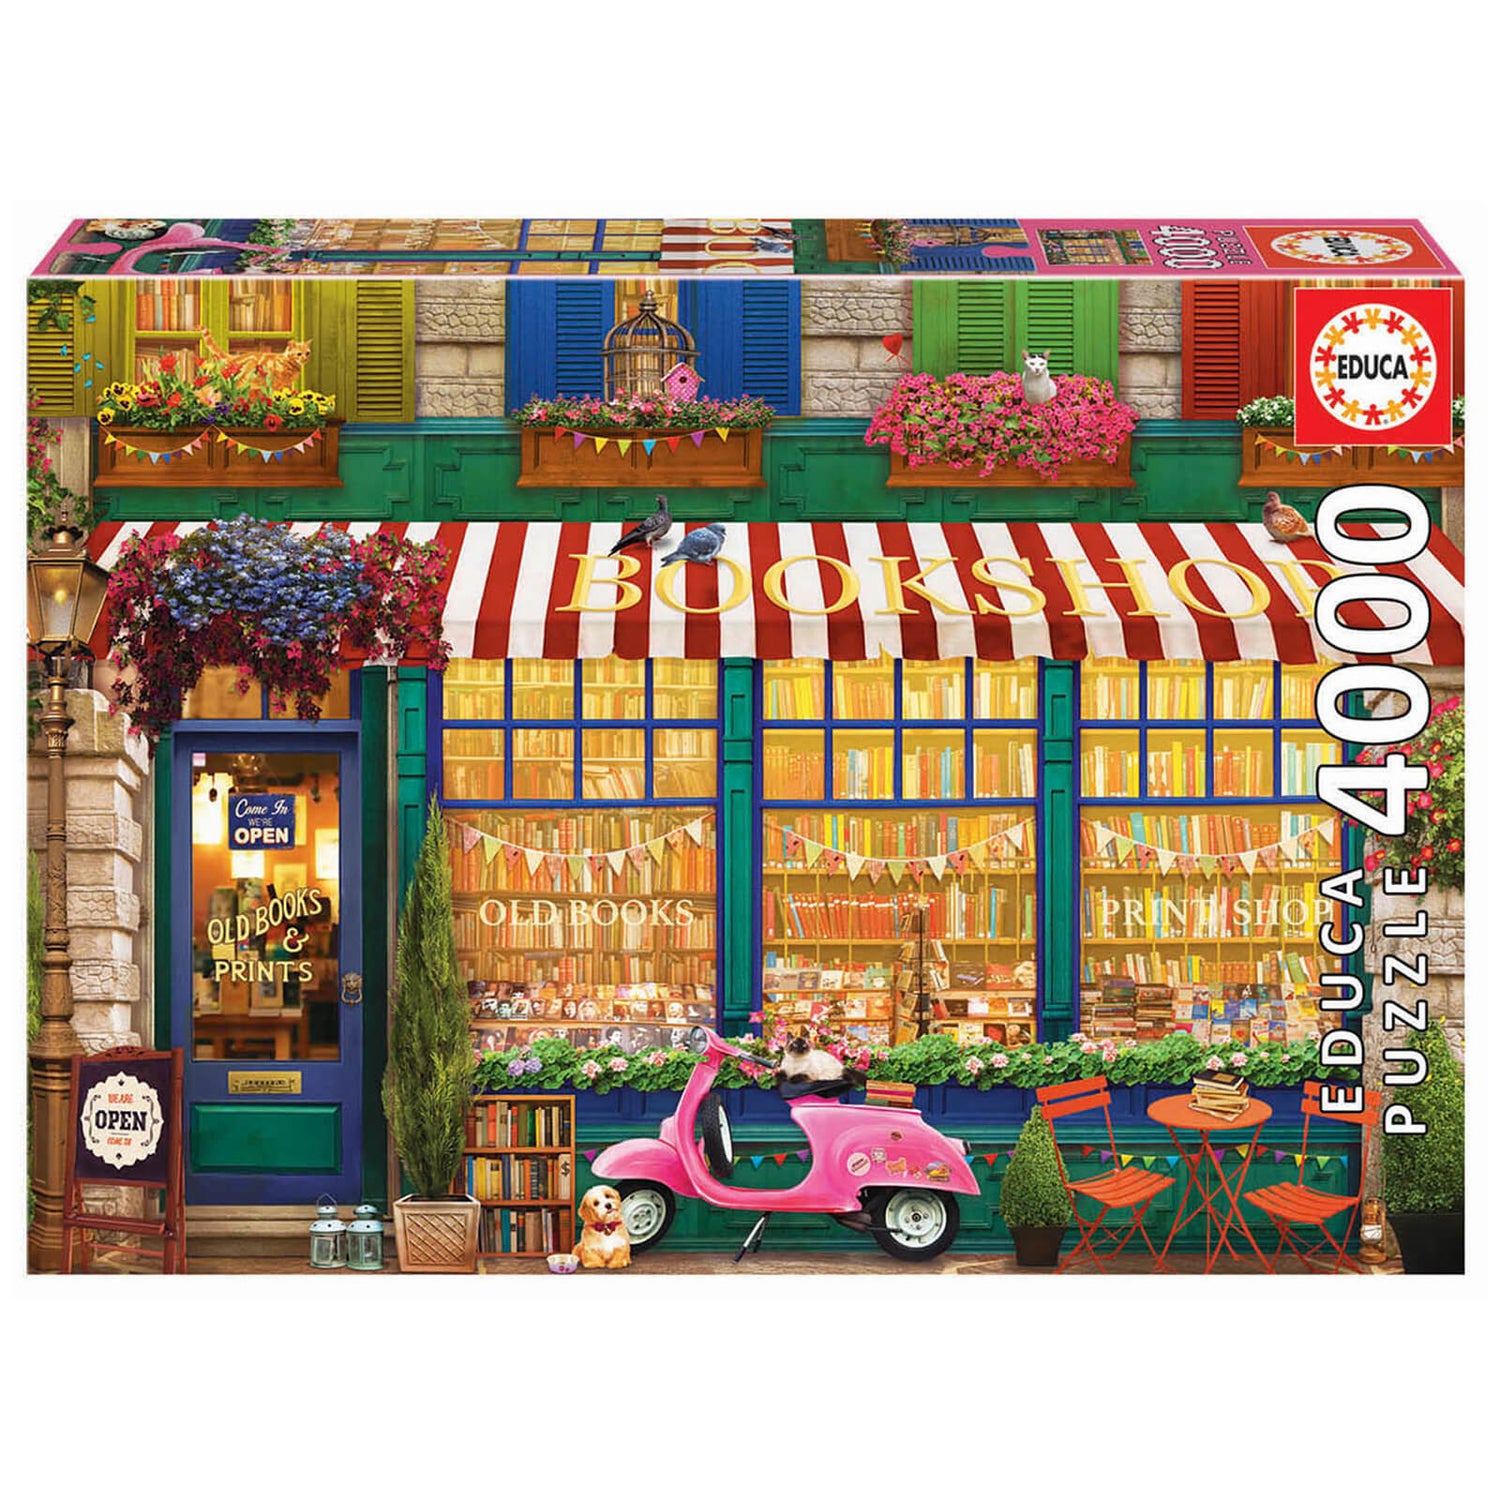 Vintage Bookshop Jigsaw Puzzle (4000 pieces)